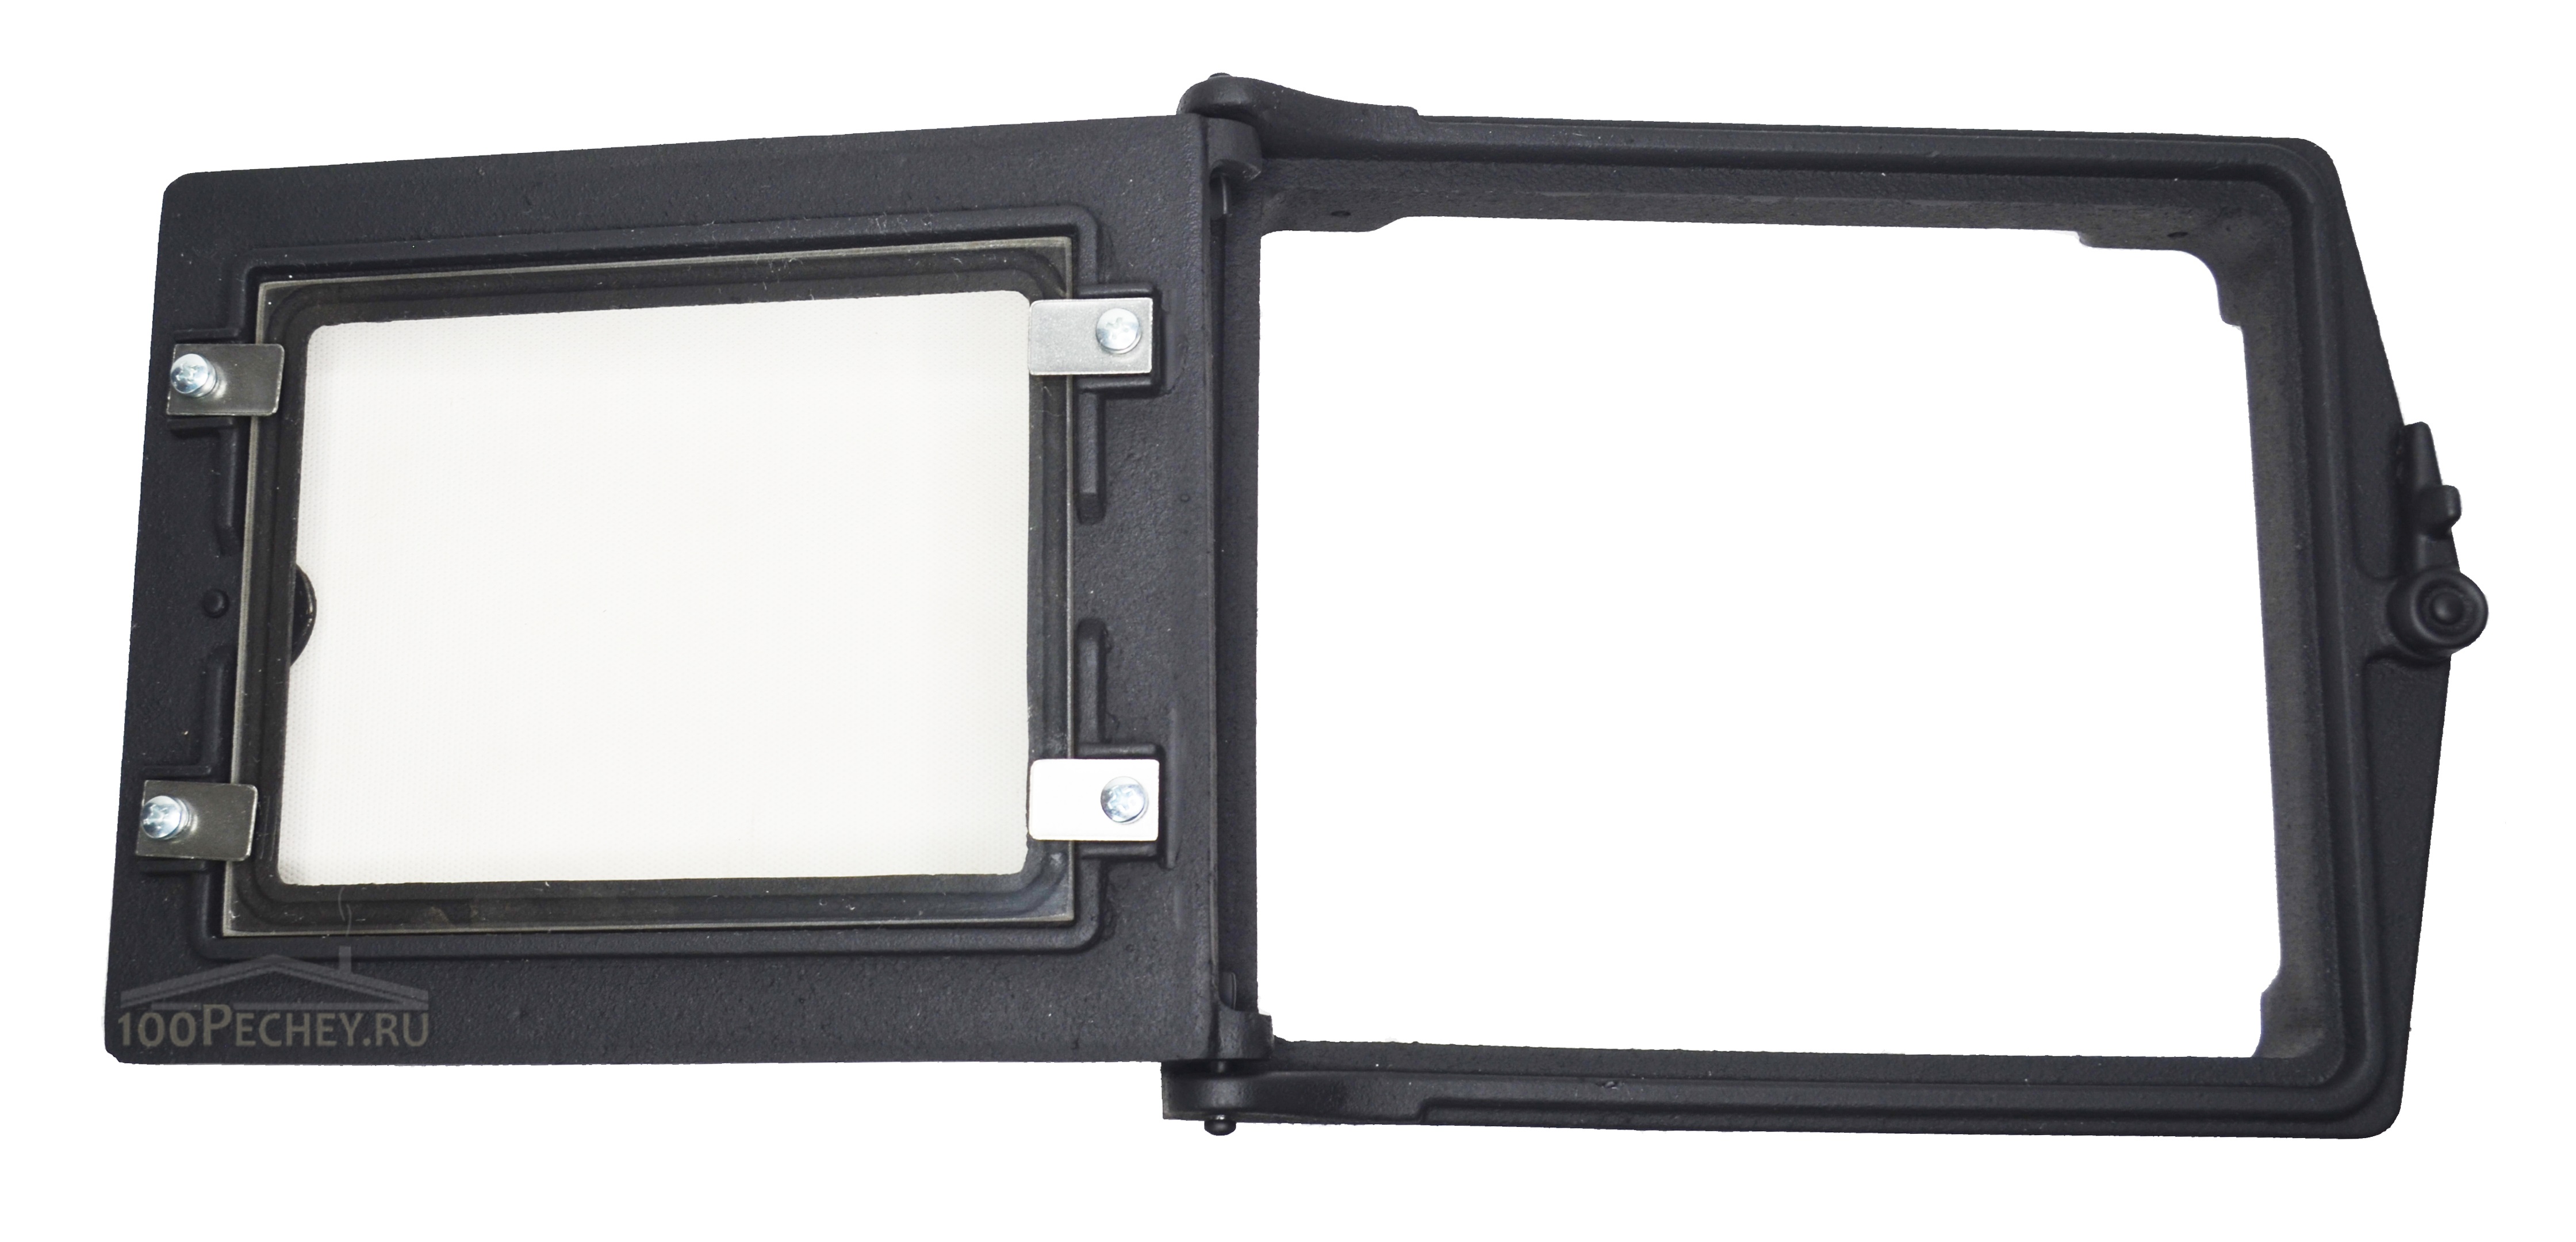 Дверка топочная ДТ-3С с термостойким стеклом RLK517 (неокрашенная)